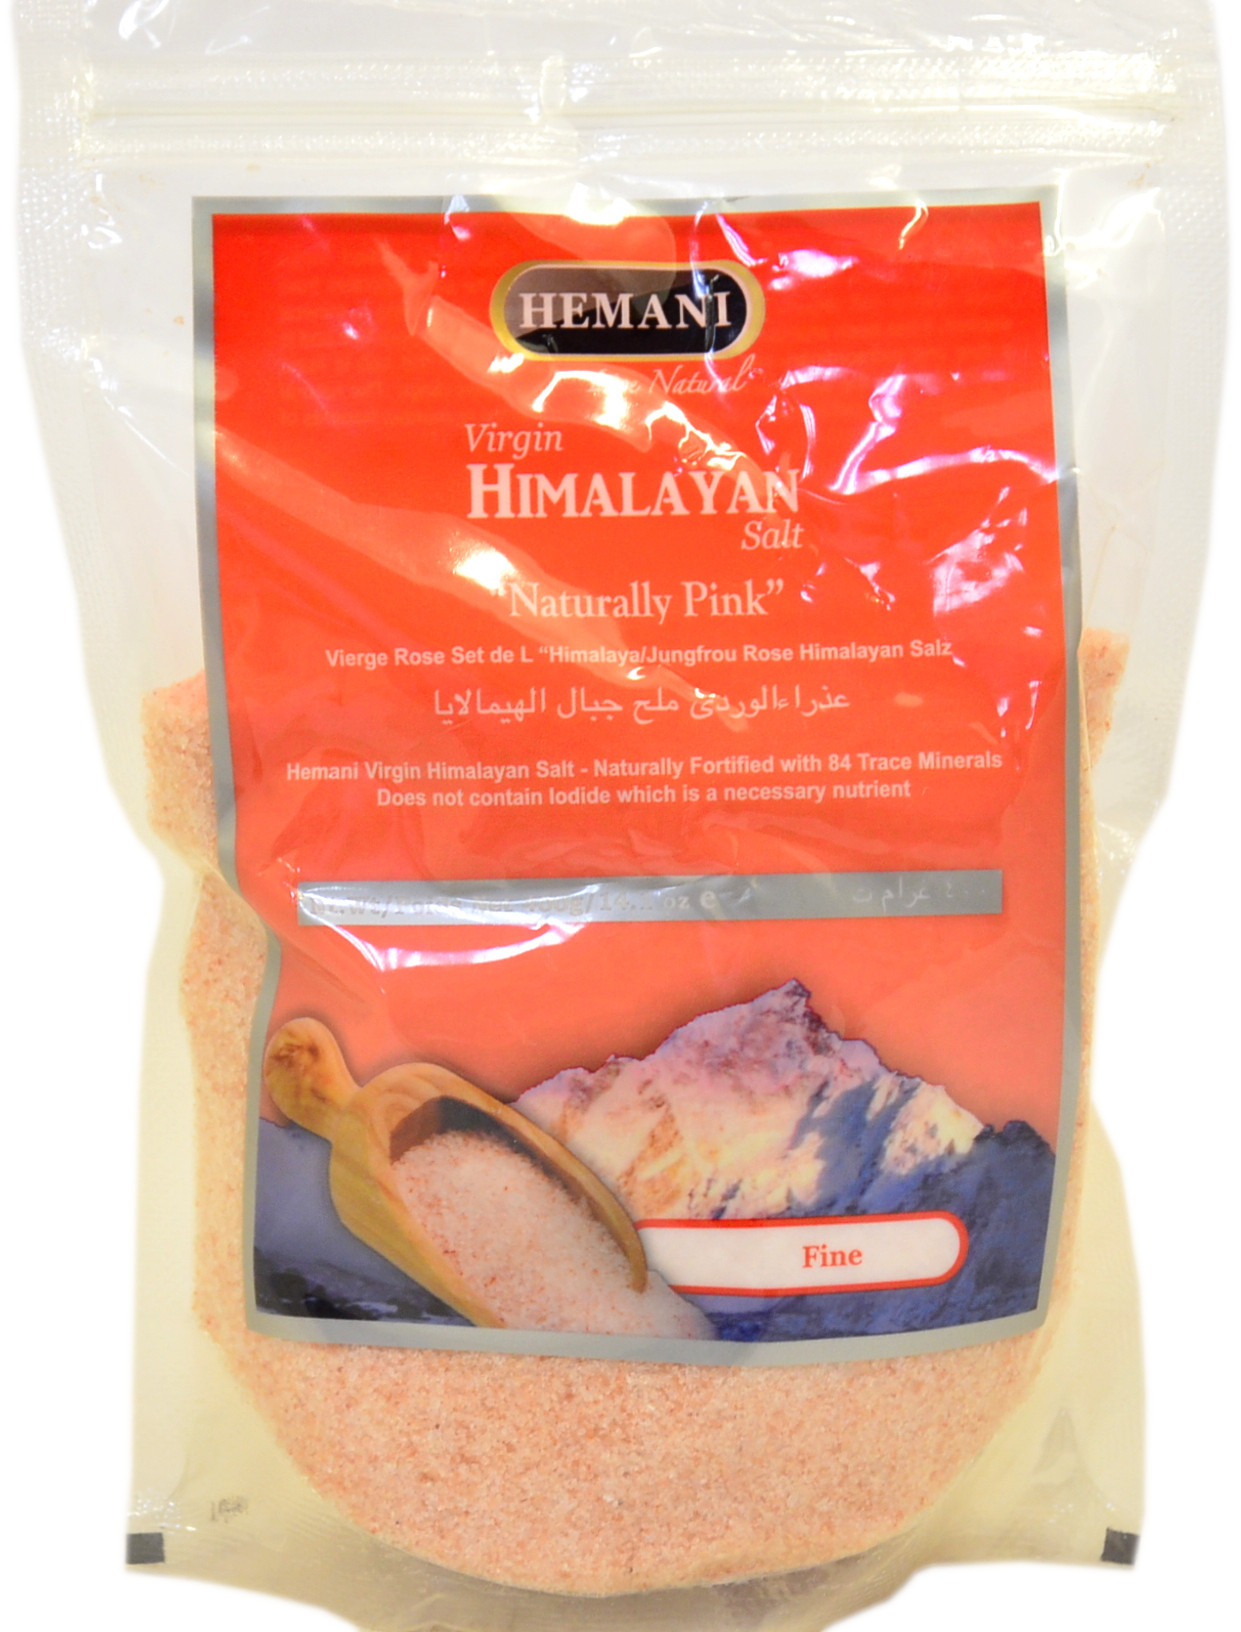 Virgin Himalayan Salt NATURALLY PINK Fine, Hemani (Натуральная гималайская розовая соль МЕЛКАЯ, Хемани), 400 г.